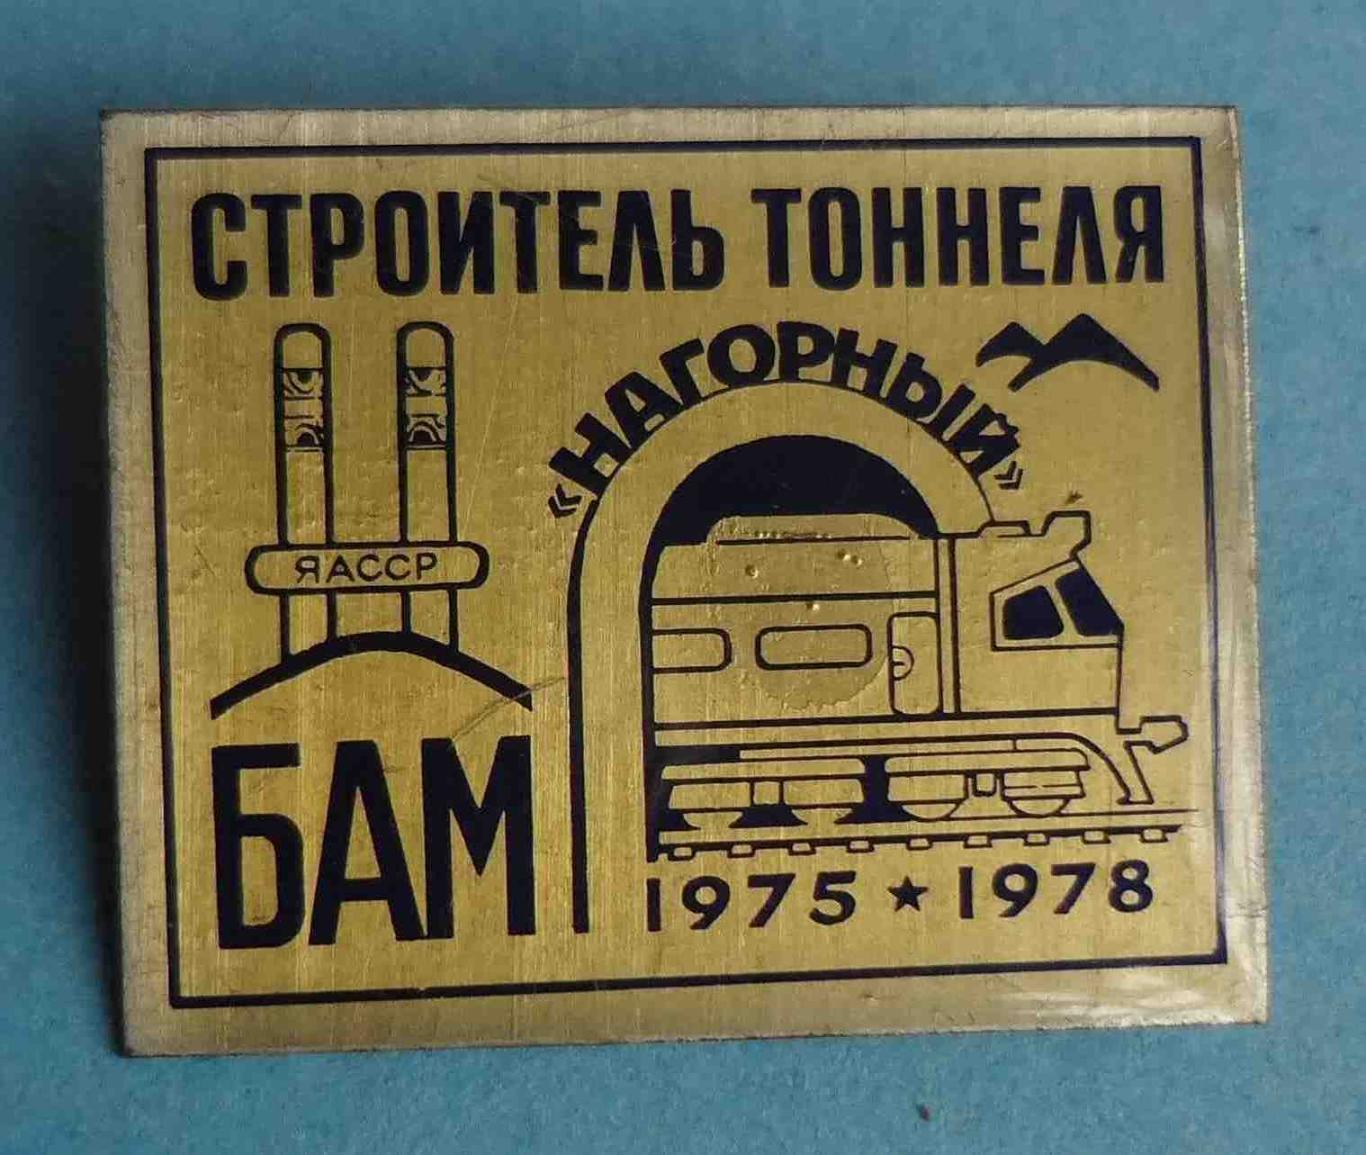 Строитель тоннеля Нагорный БАМ 1975-1978 ЯАССР жд поезд (31)